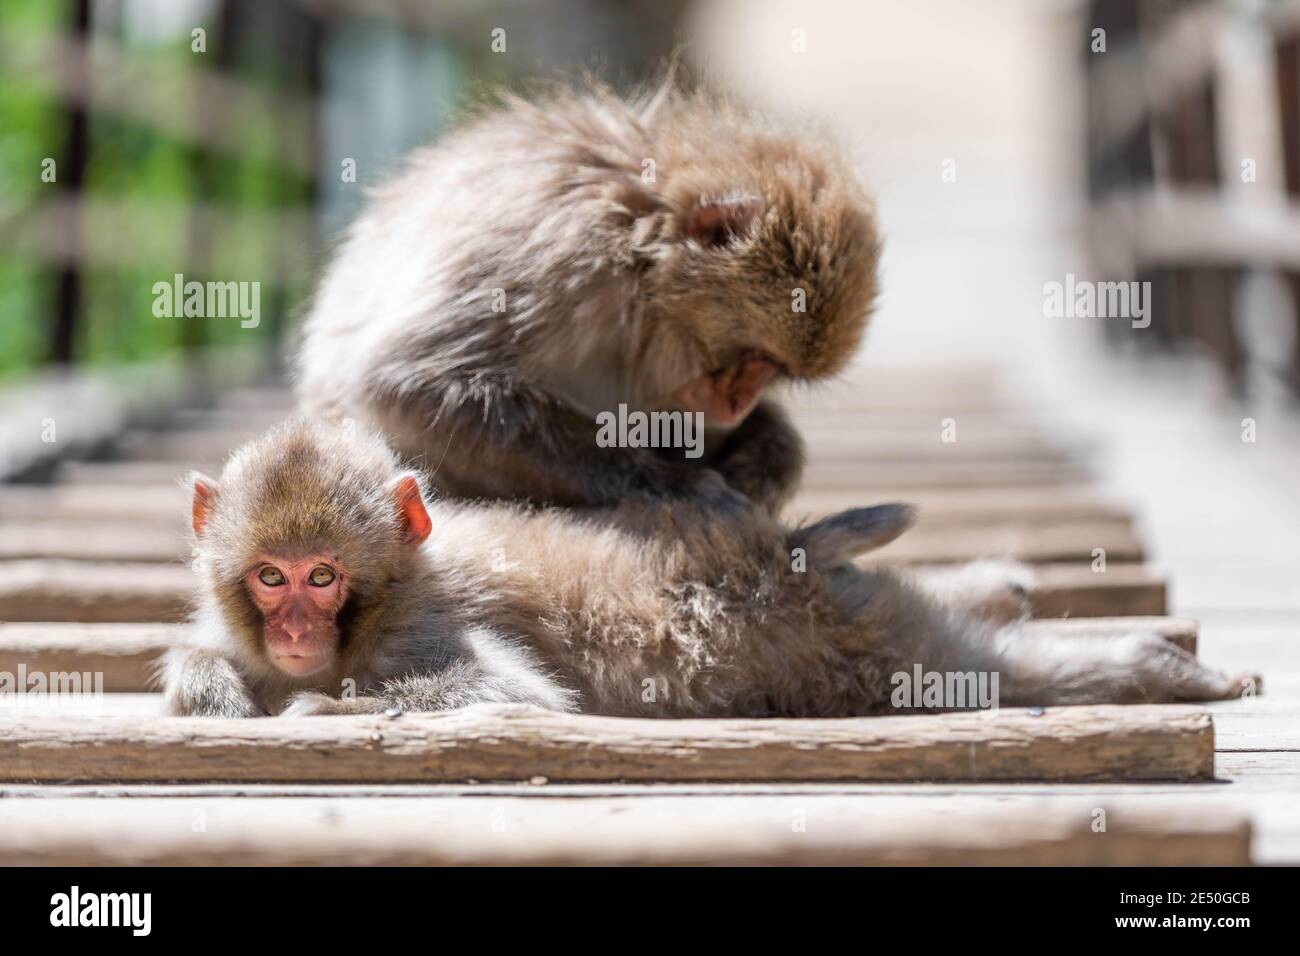 Nahaufnahme von zwei japanischen Makaken, die sich auf einem hölzernen Laufsteg vor einem Bokeh-Hintergrund pflegen Stockfoto